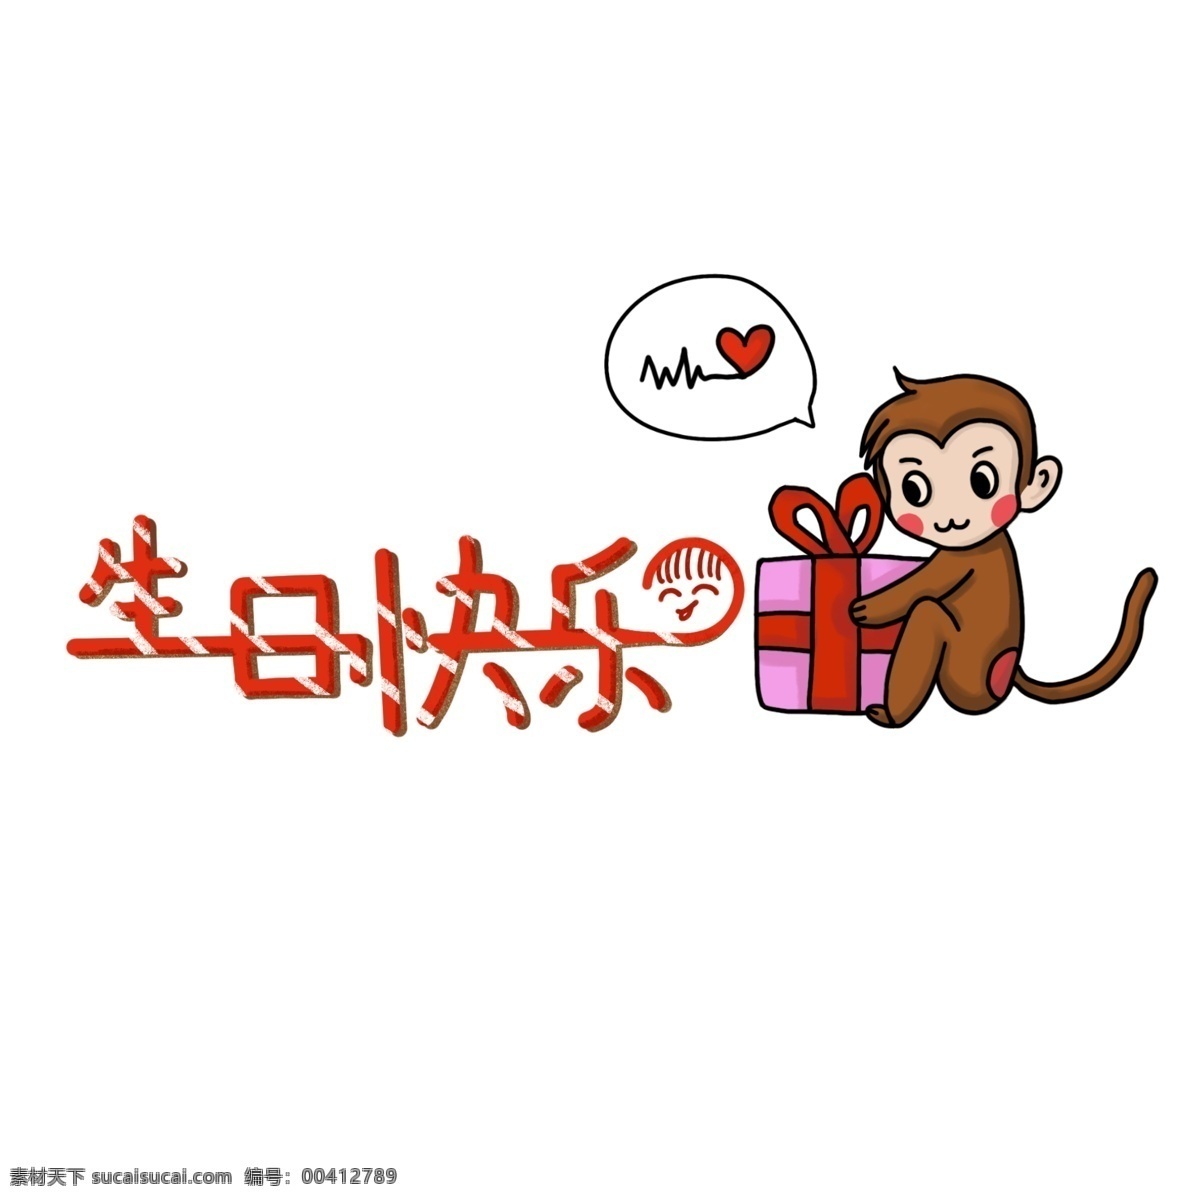 生日 送礼 物 猴子 礼物 生日快乐 生日祝福 爱心 礼盒 动物 表情